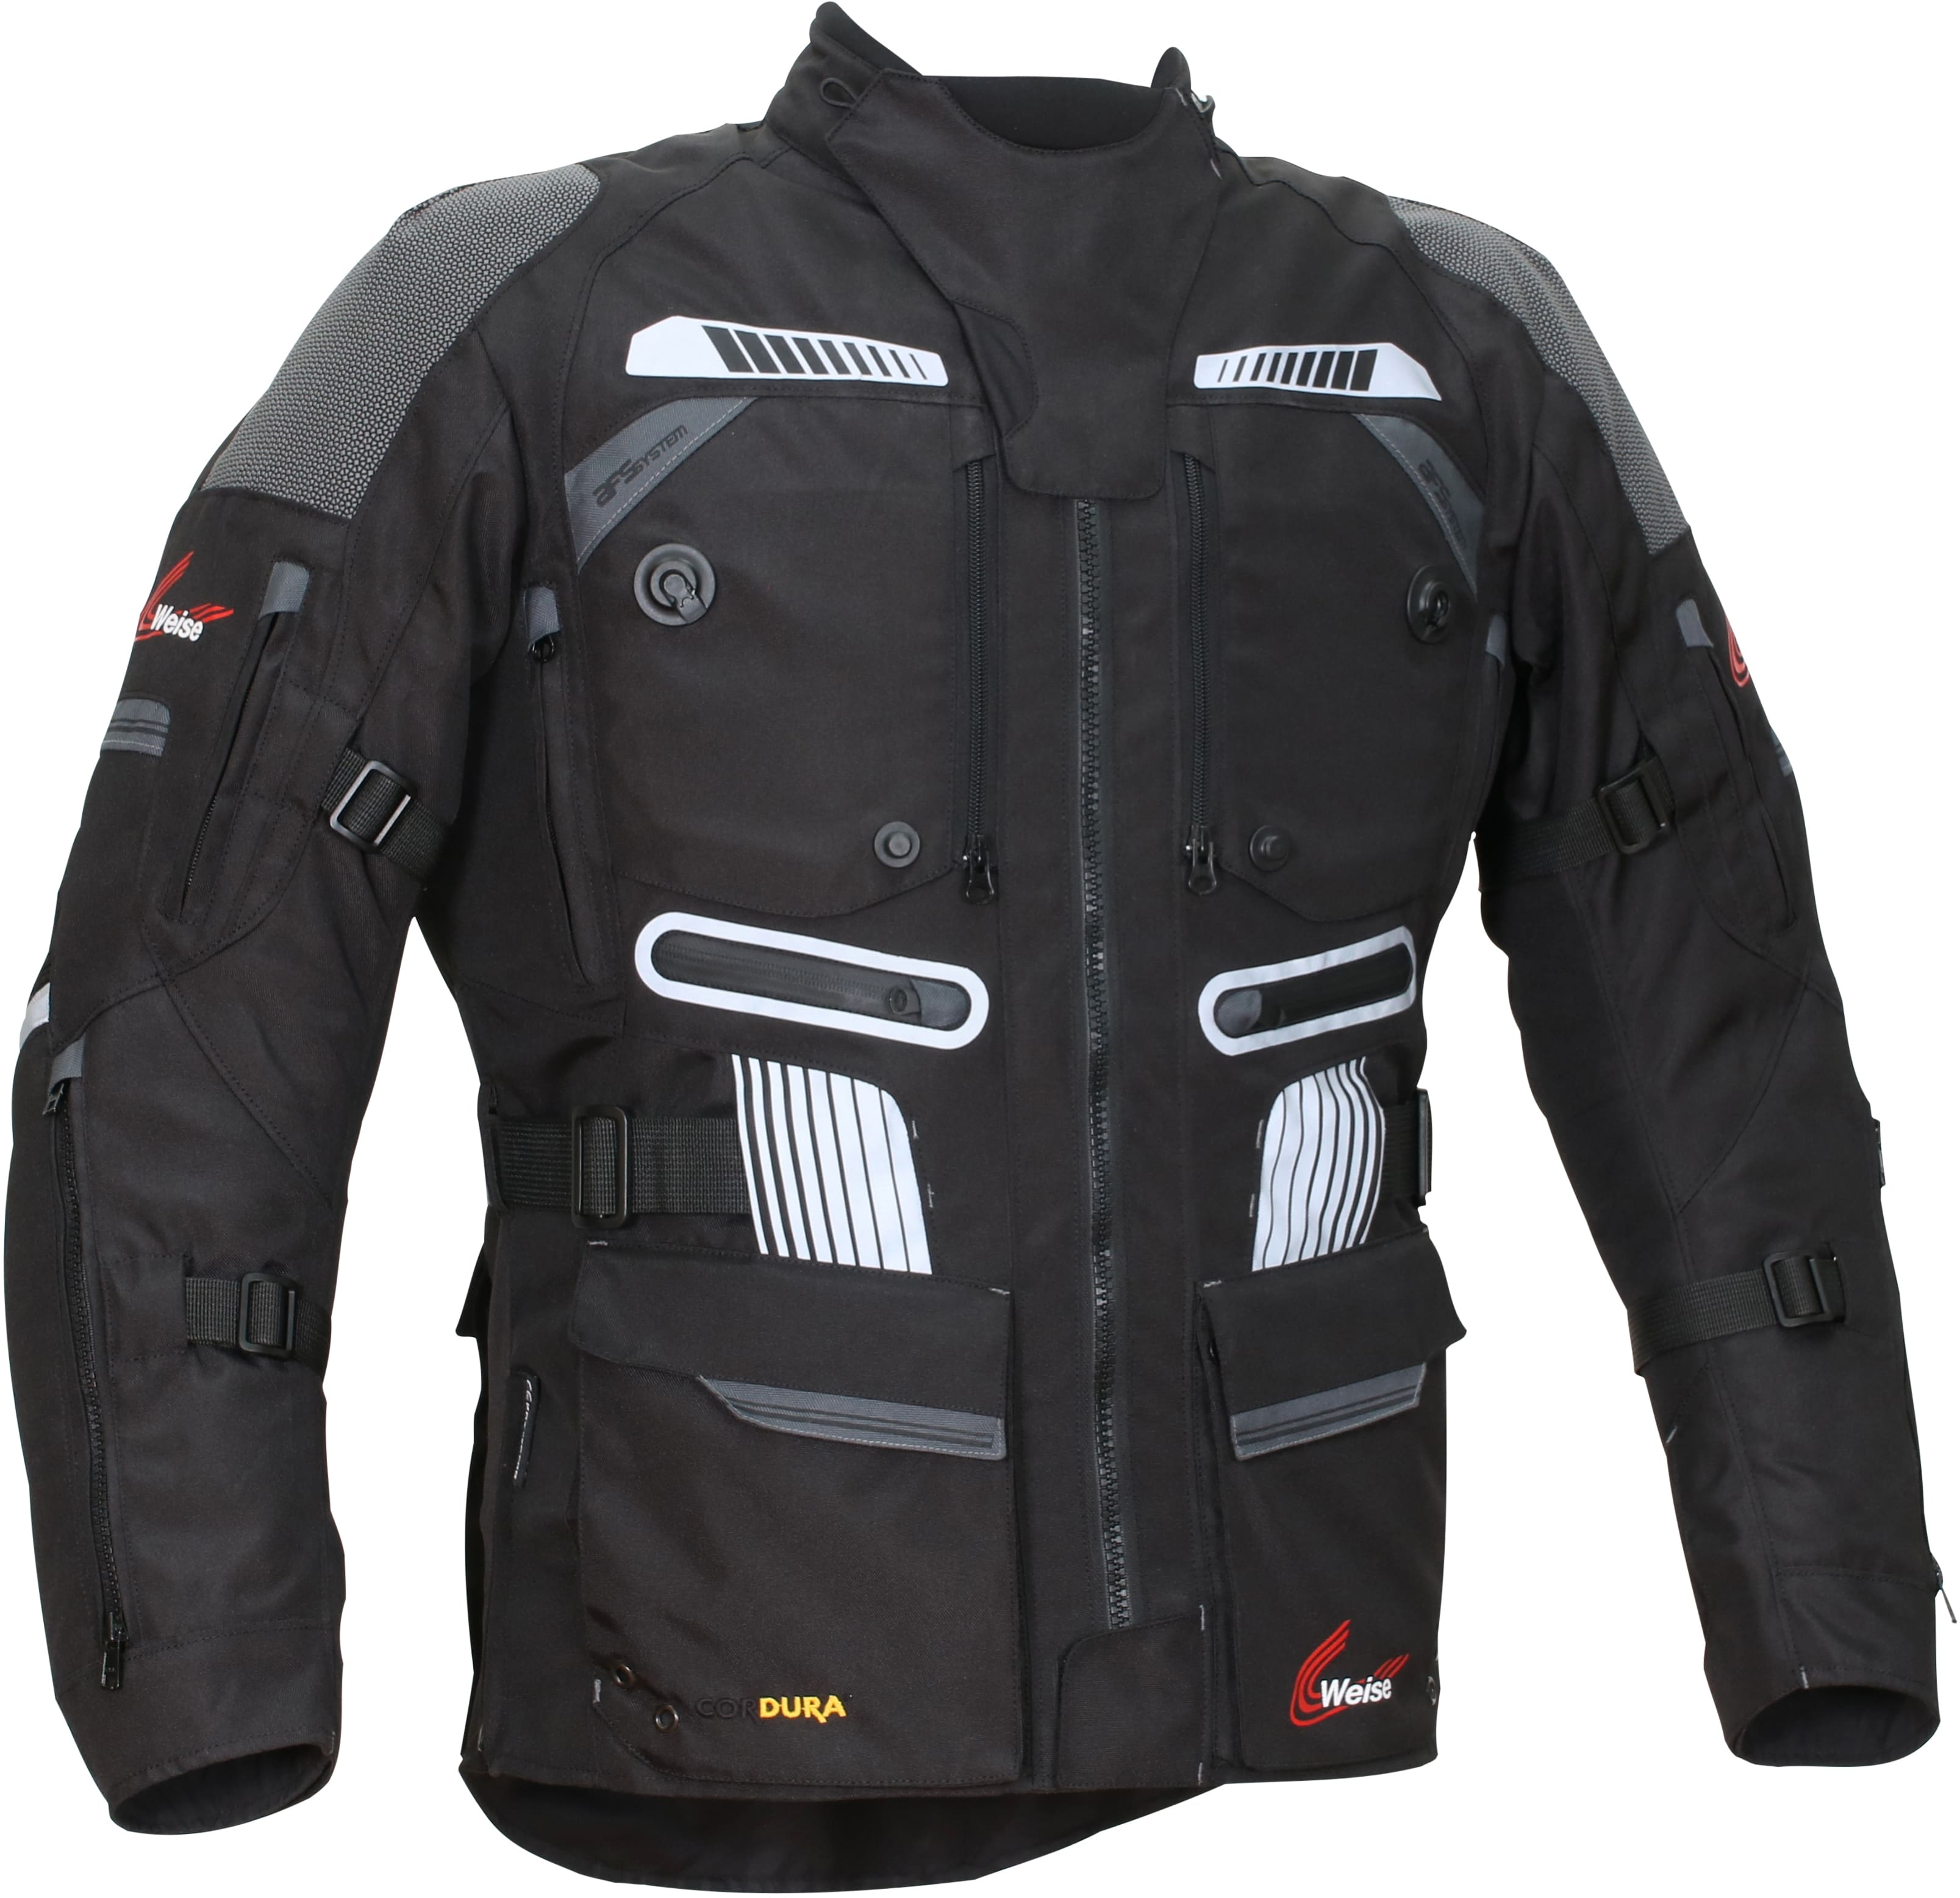 Weise Summit Jacket - Black | Weise Motorcycle Clothing | FREE UK DELIVERY